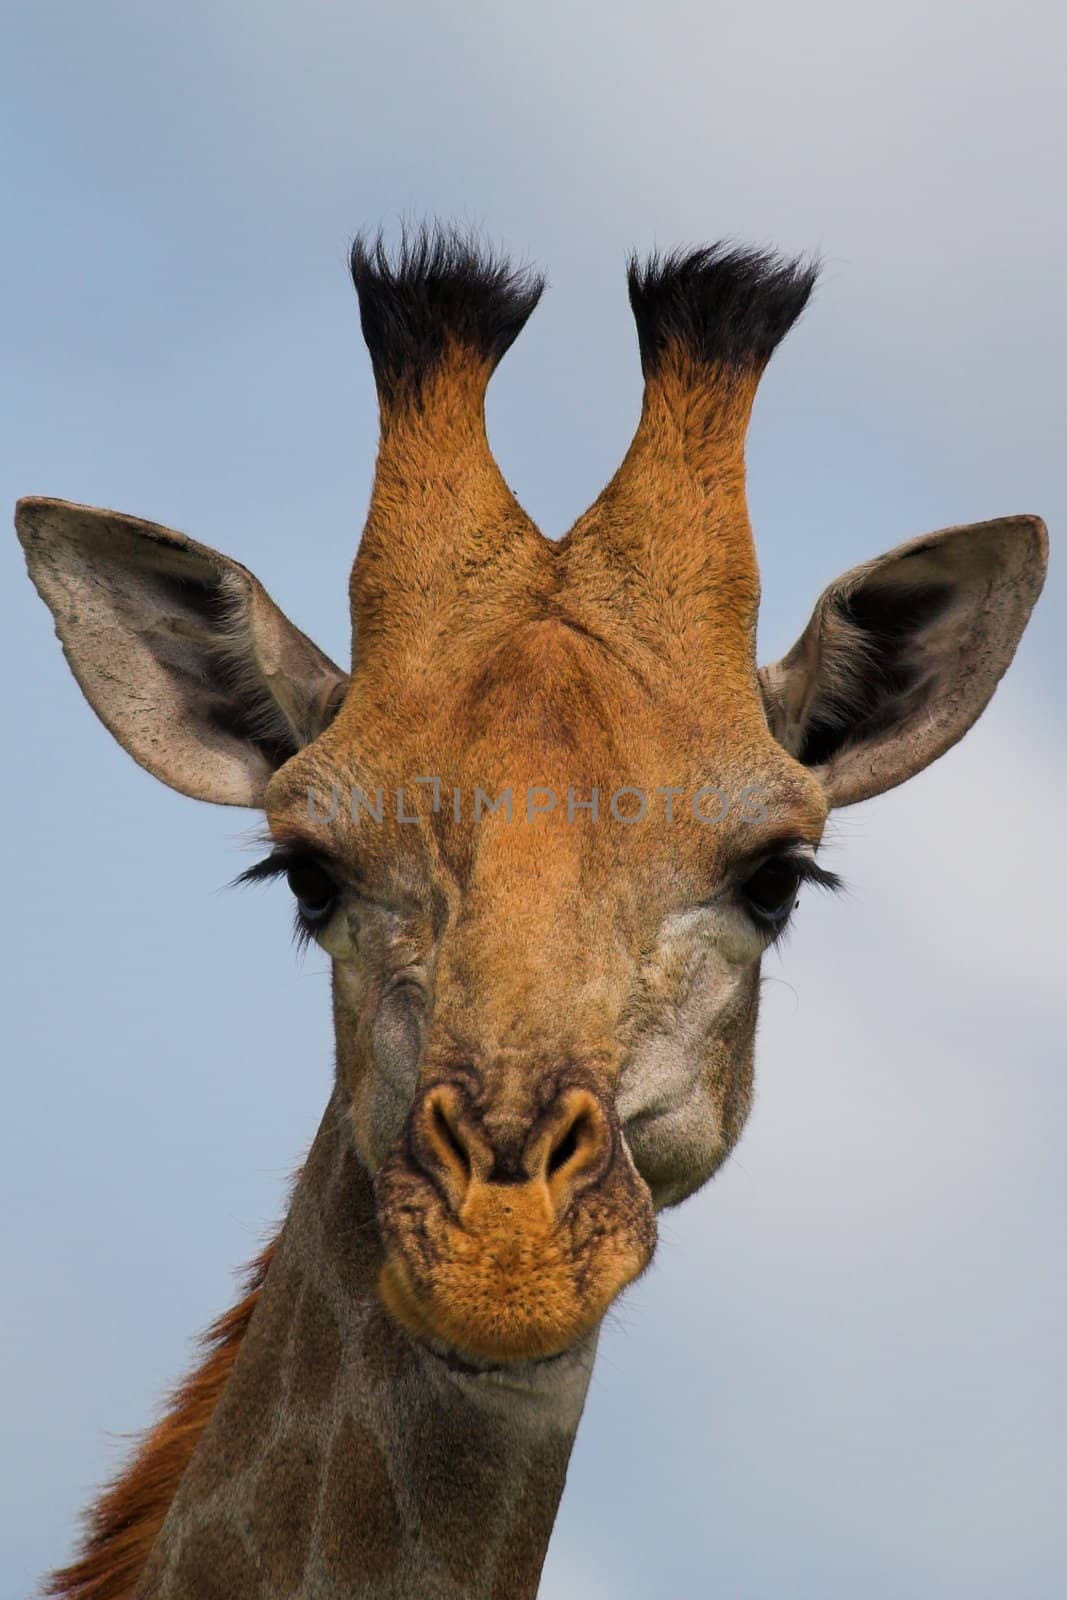 Giraffe Head Shot by nightowlza